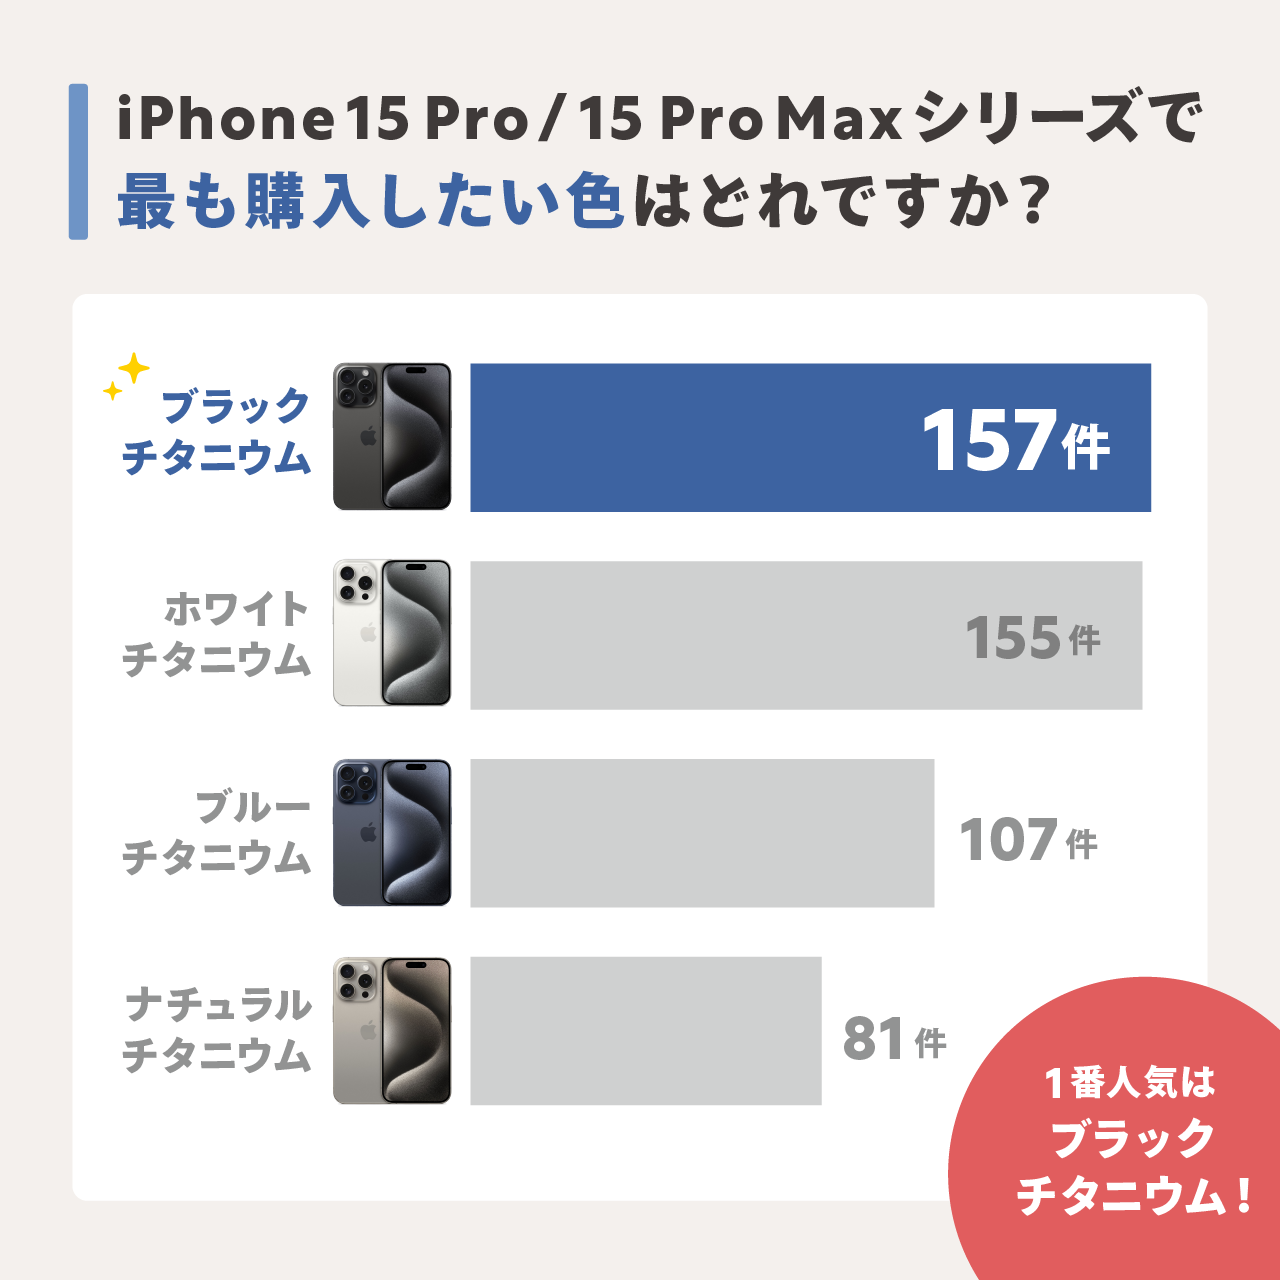 iPhone 15 Proシリーズで購入したいカラー